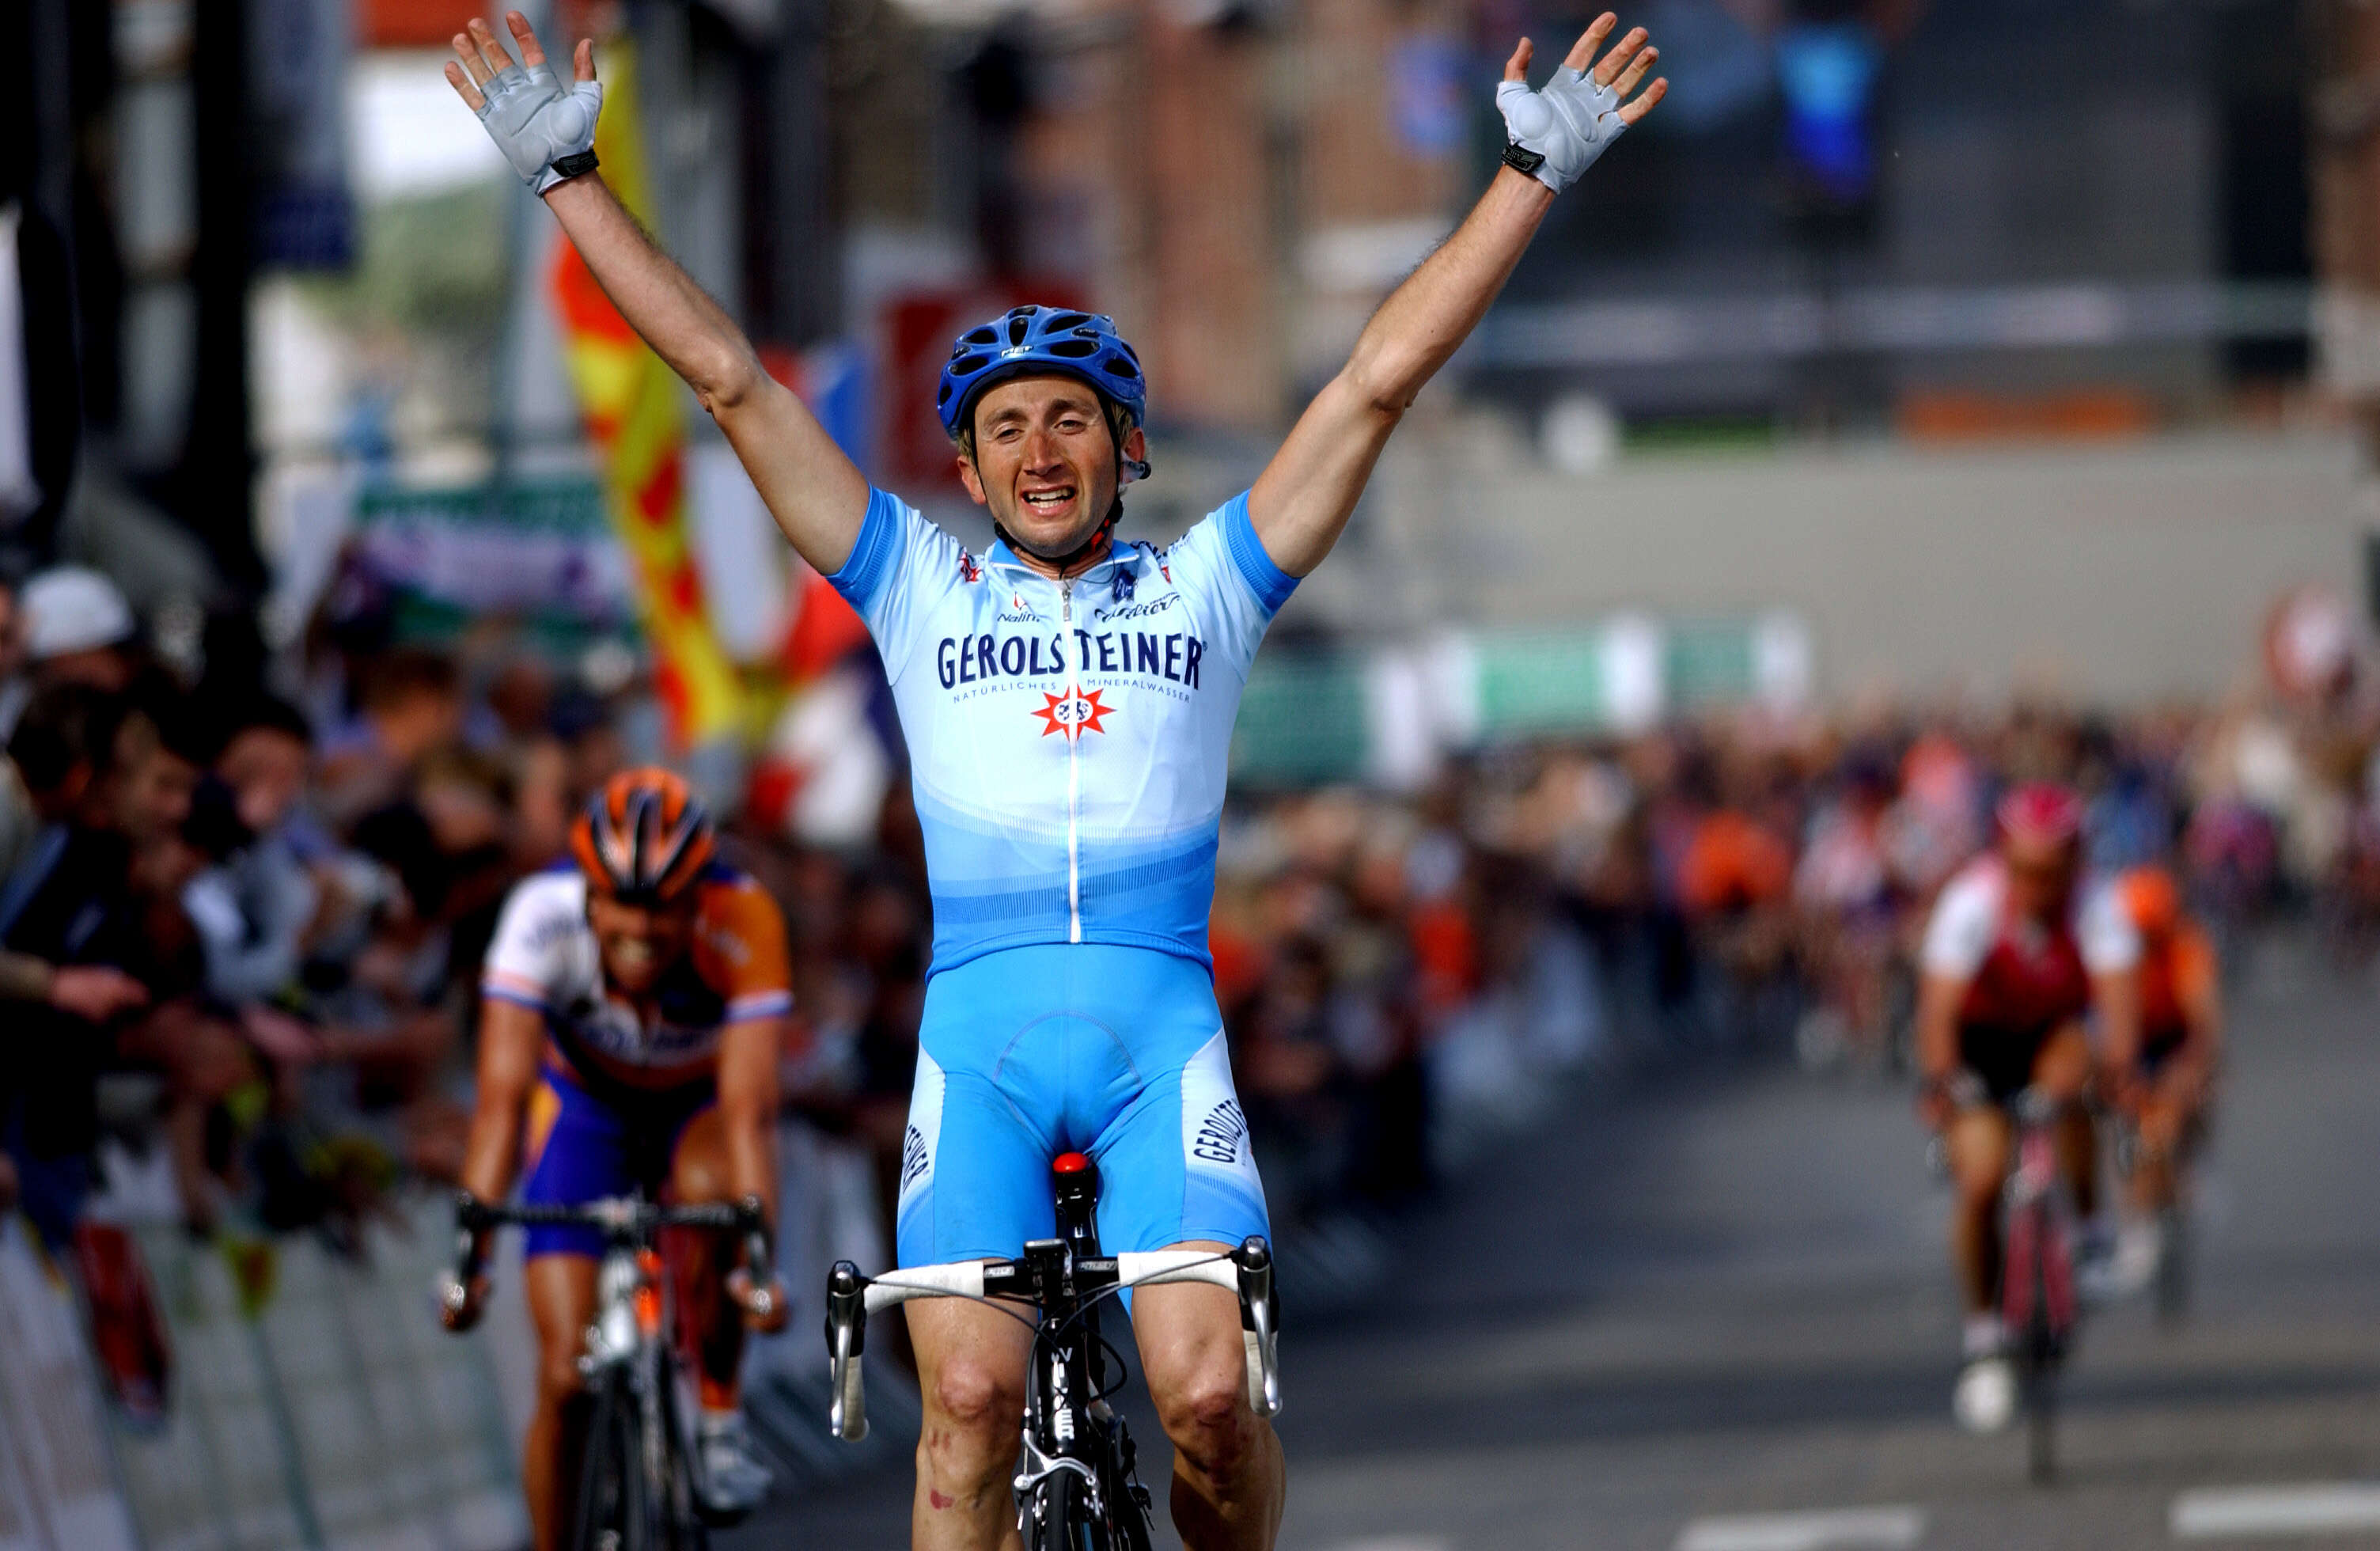 Au cours de sa carrière, Davide Rebellin a remporté certaines des plus belles courses du calendrier cycliste, dont Liège-Bastogne-Liège en 2004 par exemple.